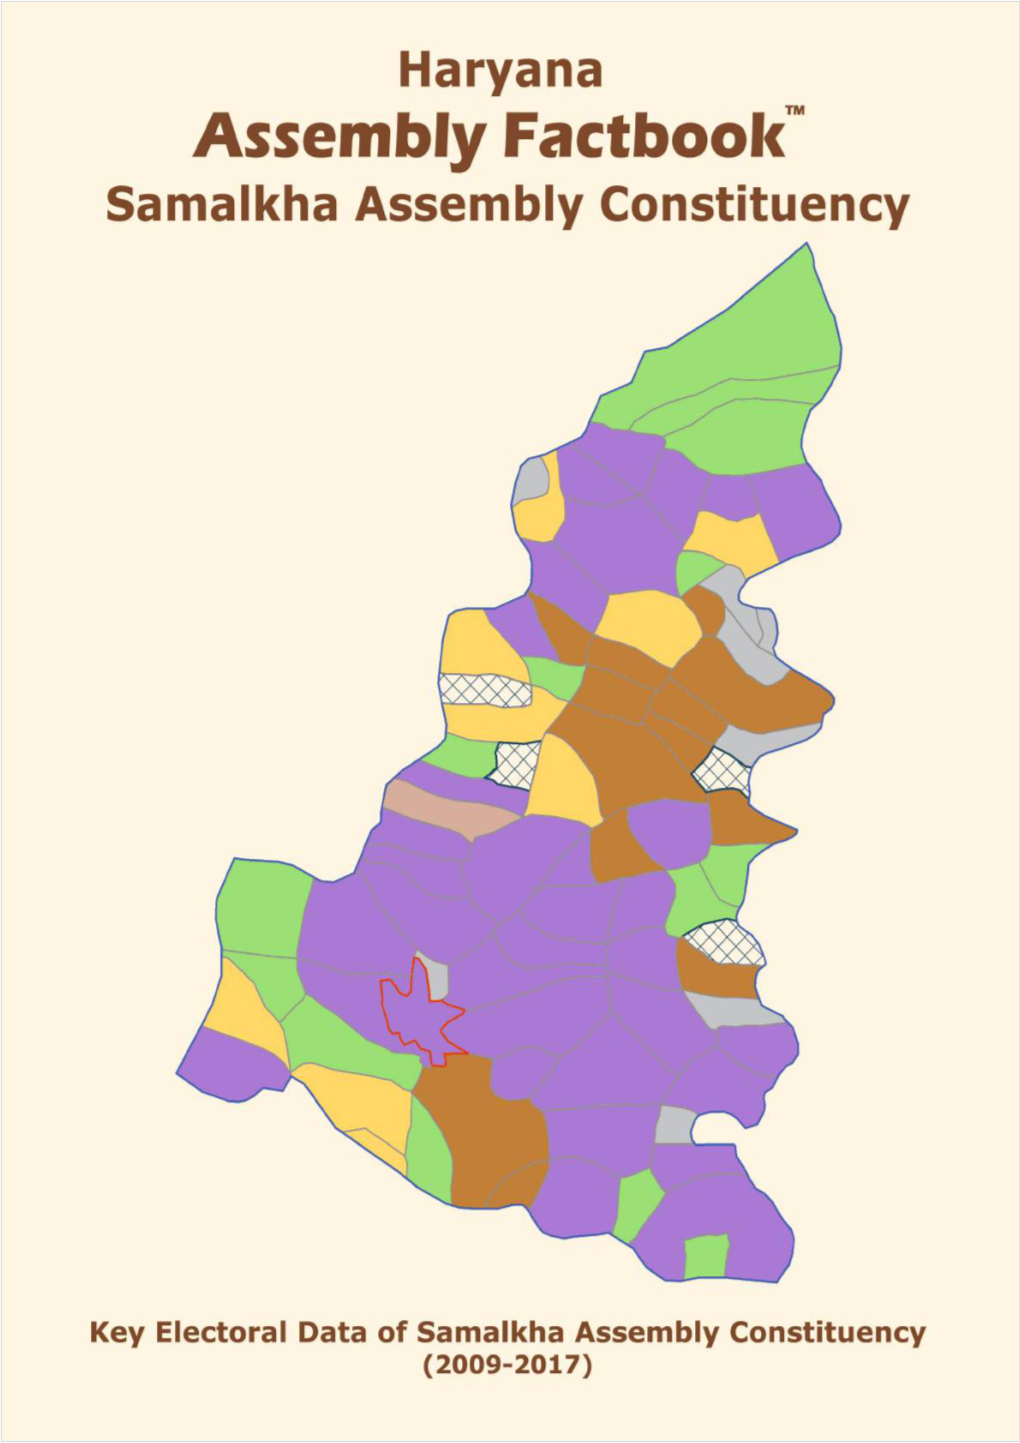 Samalkha Assembly Haryana Factbook